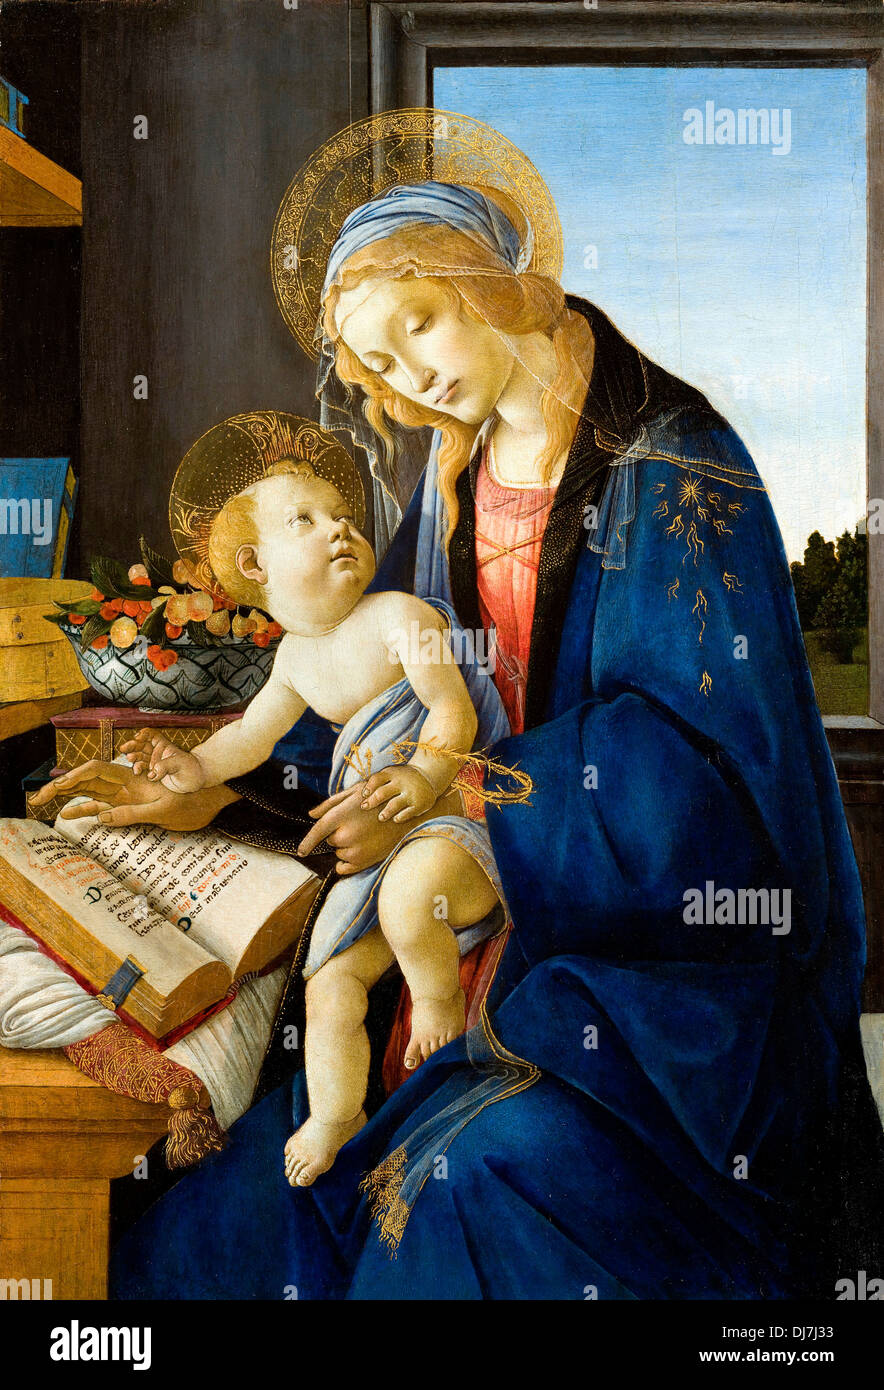 Sandro Botticelli, die Jungfrau und das Kind (die Madonna des Buches) 1480.  Tempera auf Verkleidung. Museo Poldi Pezzoli, Mailand, Italien  Stockfotografie - Alamy